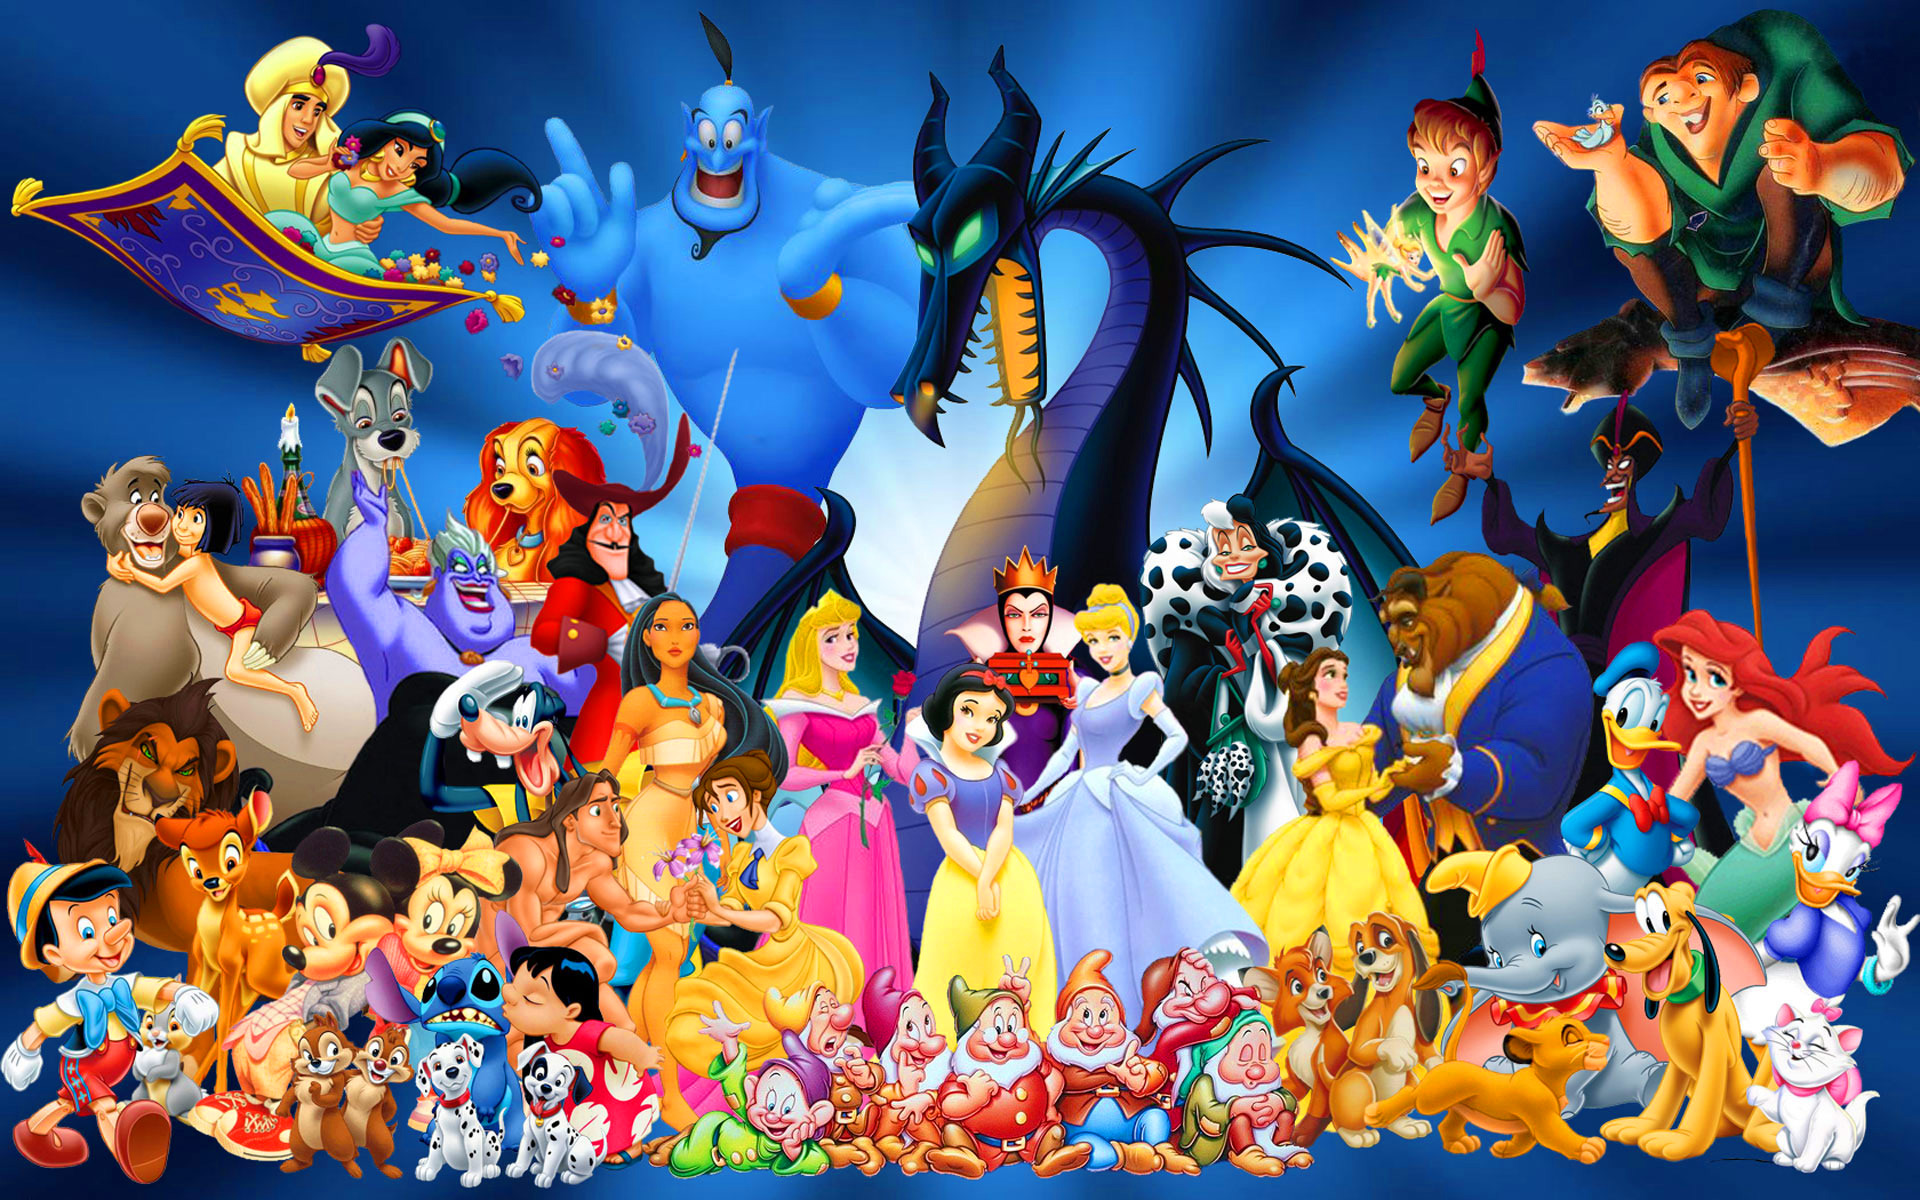  Disney Cartoon Characters computer desktop wallpapers pictures 1920x1200